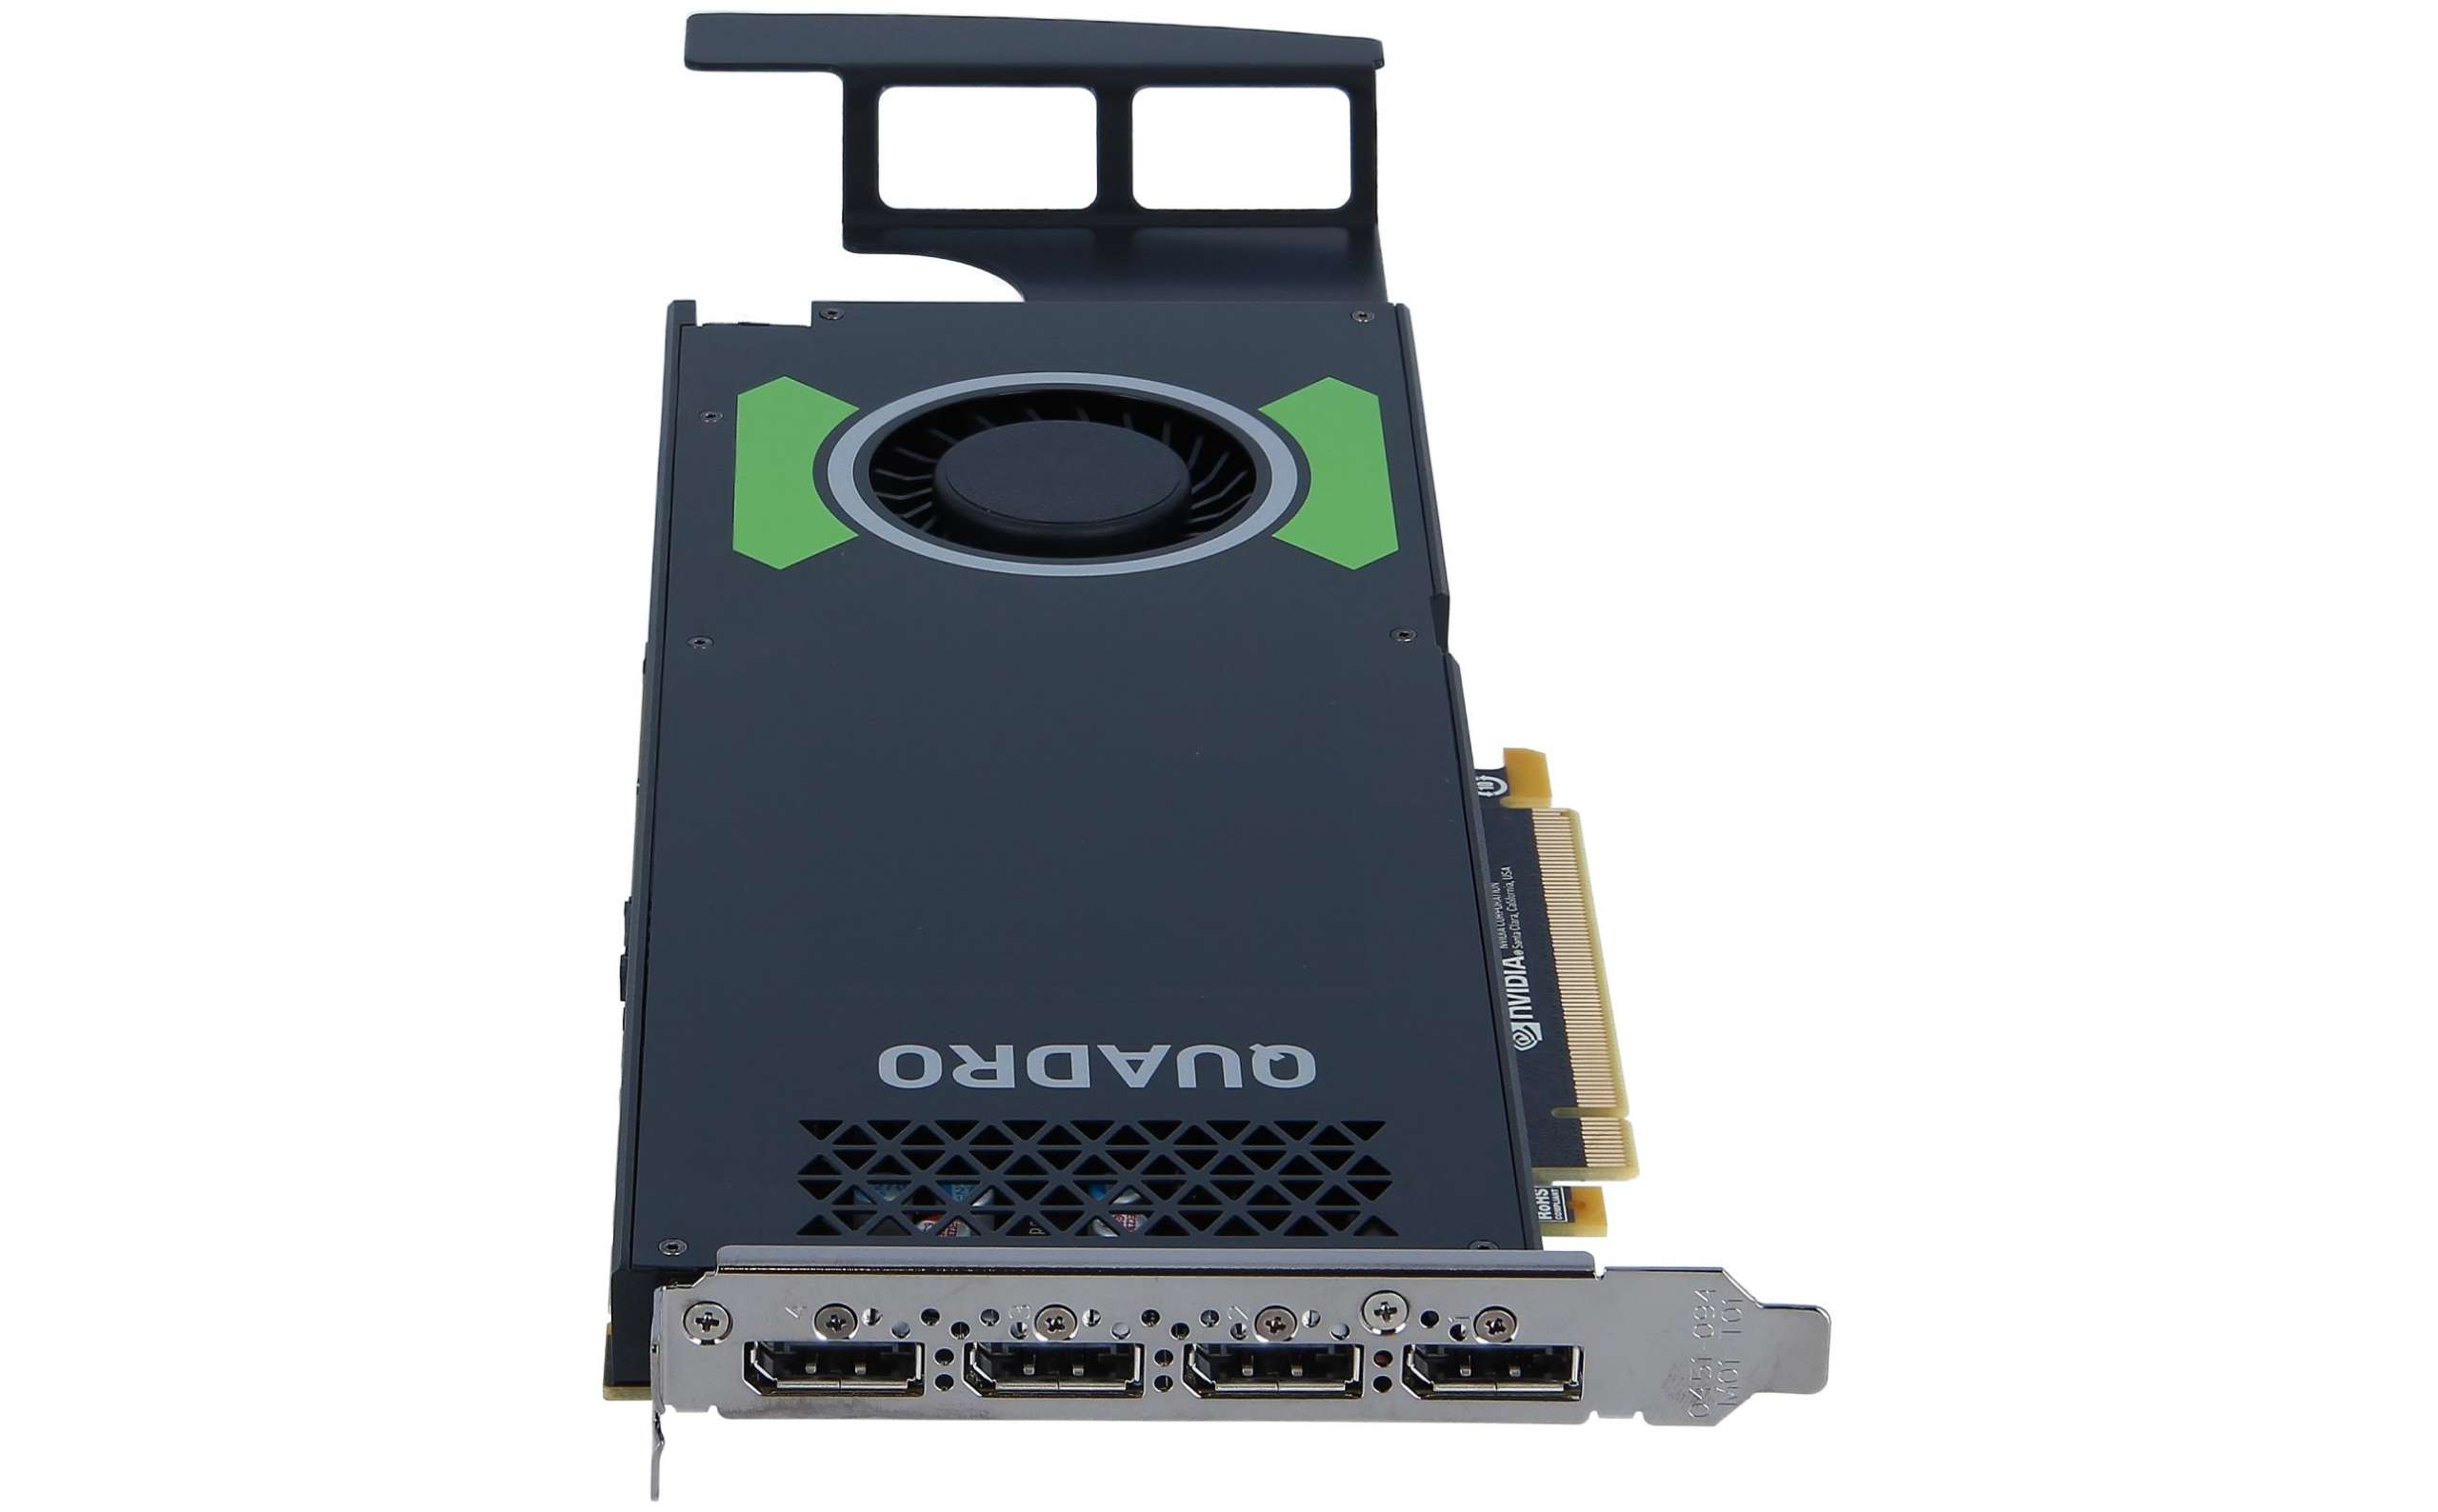 Quadro p 4000 GPU - 8gb. NVIDIA p2004. NVIDIA Quadro p4000 игры. Quadro p4000